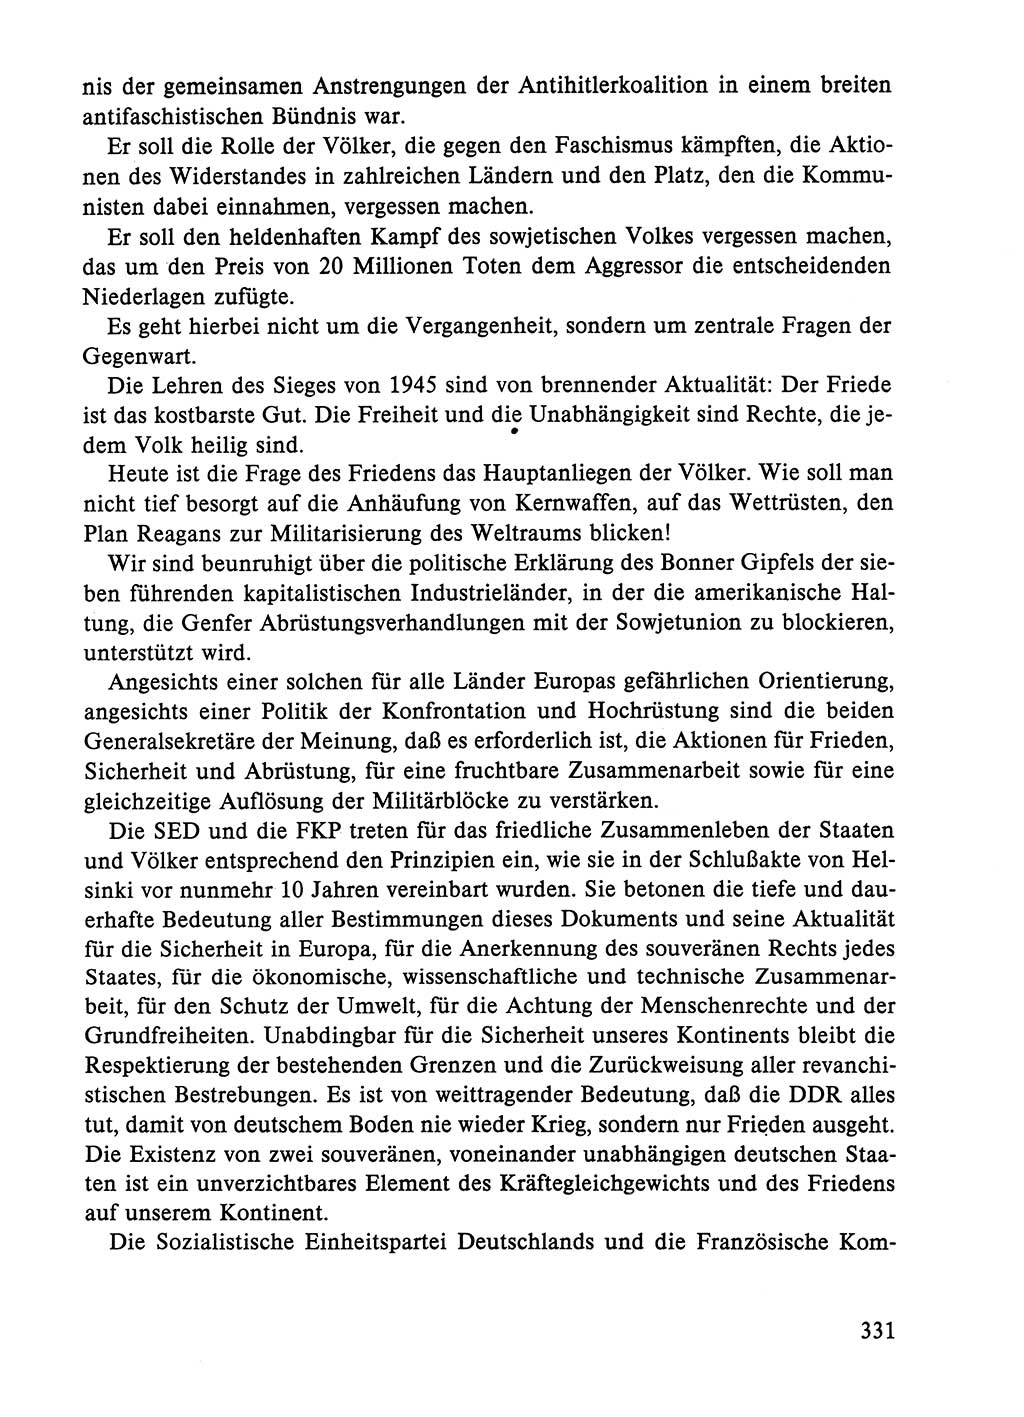 Dokumente der Sozialistischen Einheitspartei Deutschlands (SED) [Deutsche Demokratische Republik (DDR)] 1984-1985, Seite 331 (Dok. SED DDR 1984-1985, S. 331)